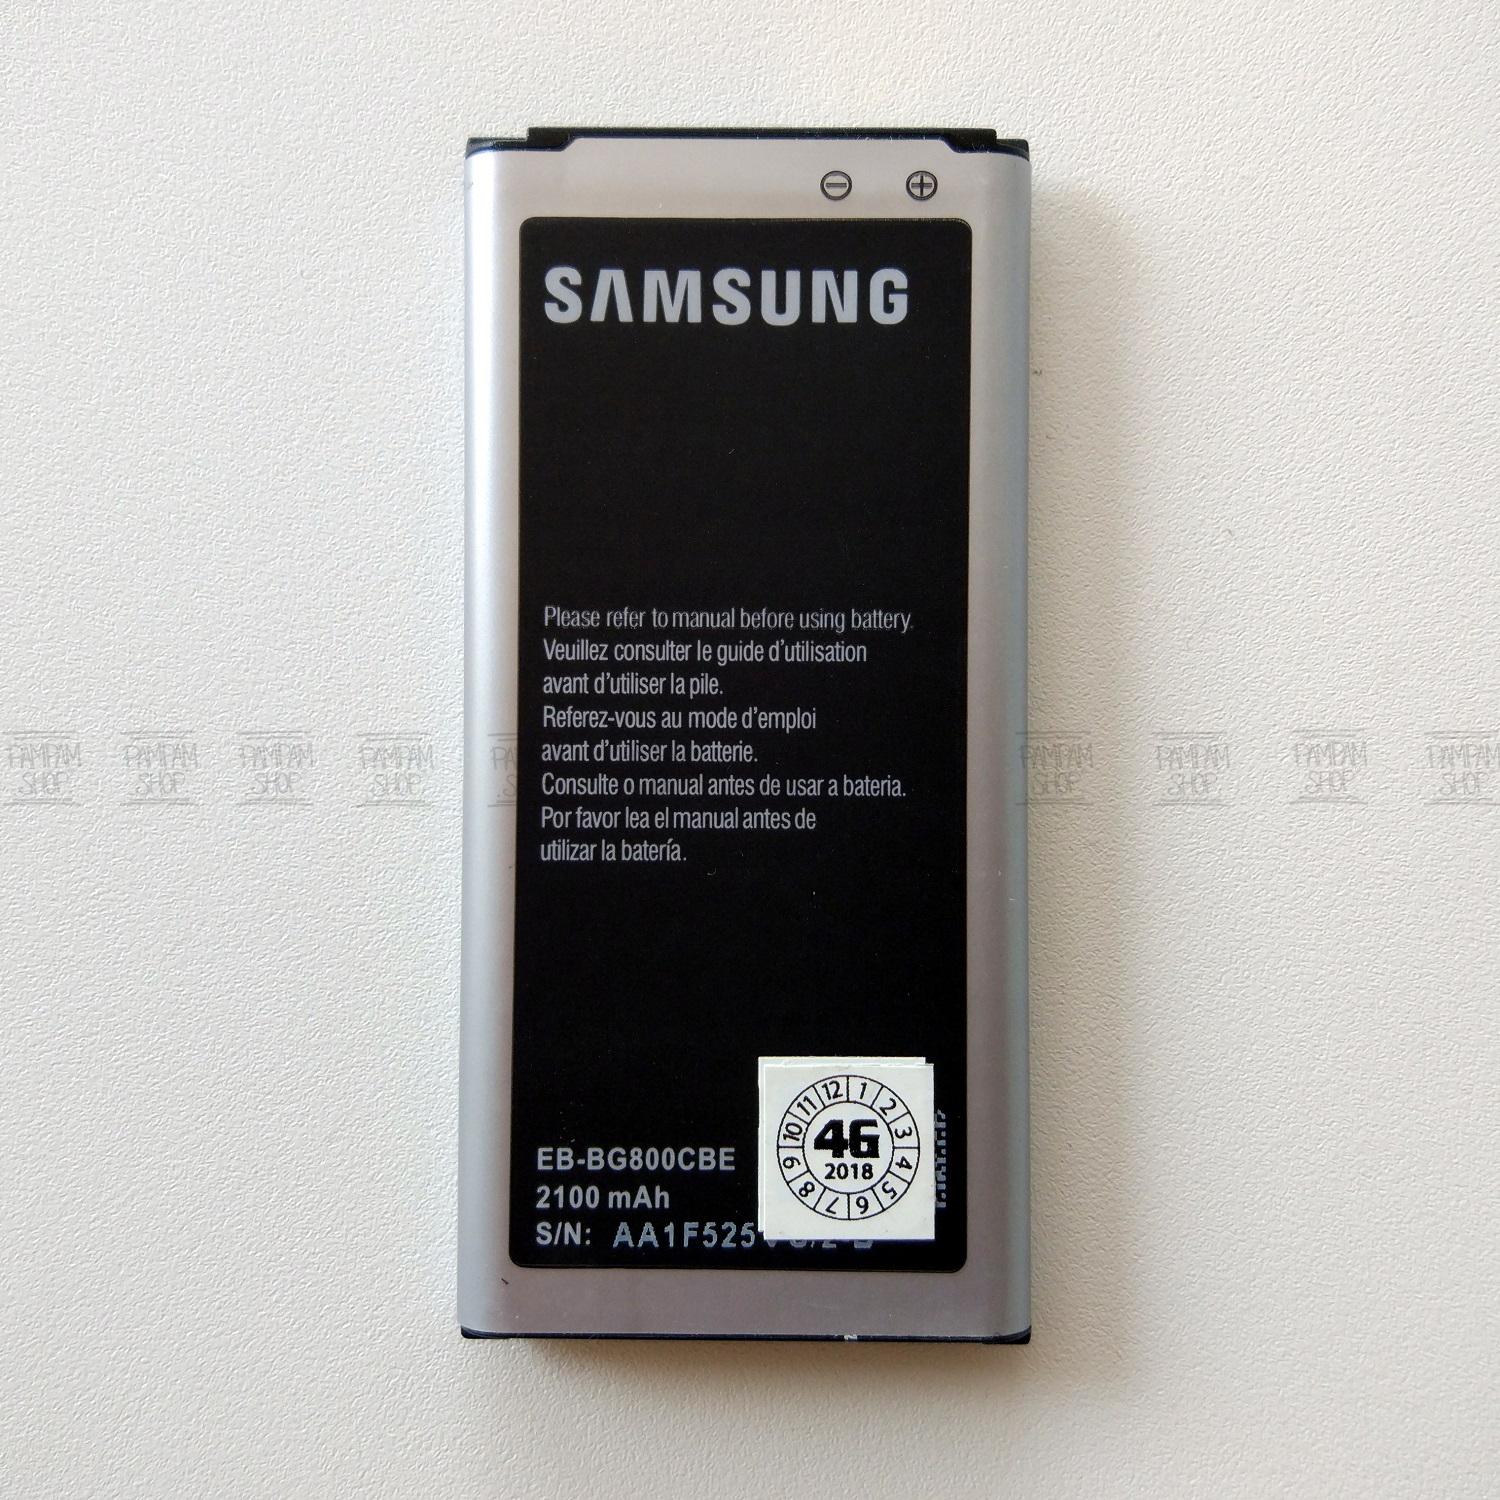 93 Gambar Samsung Galaxy Wonder Kekinian